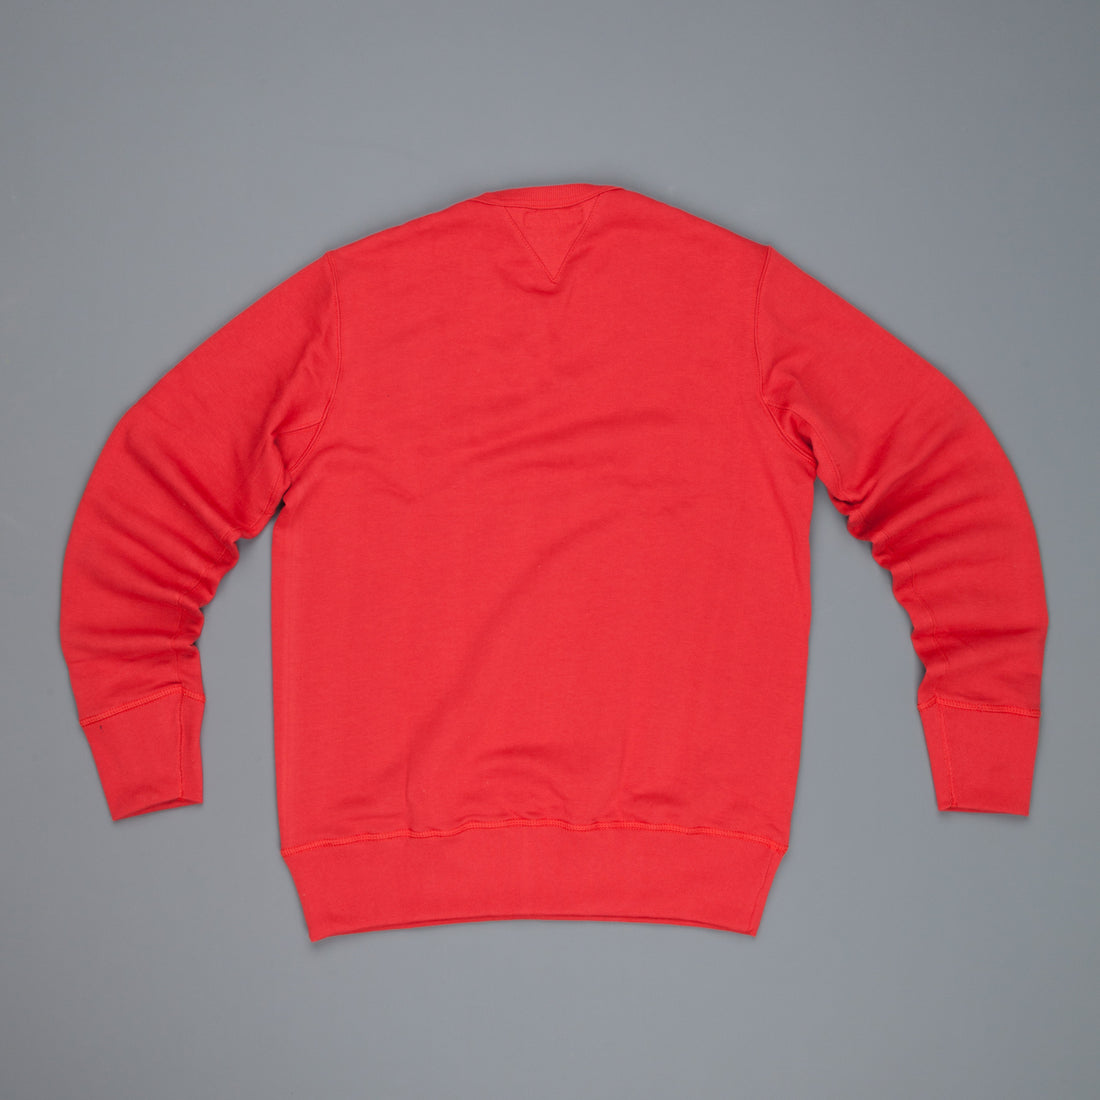 Merz B Schwanen 346 Fleece sweater red